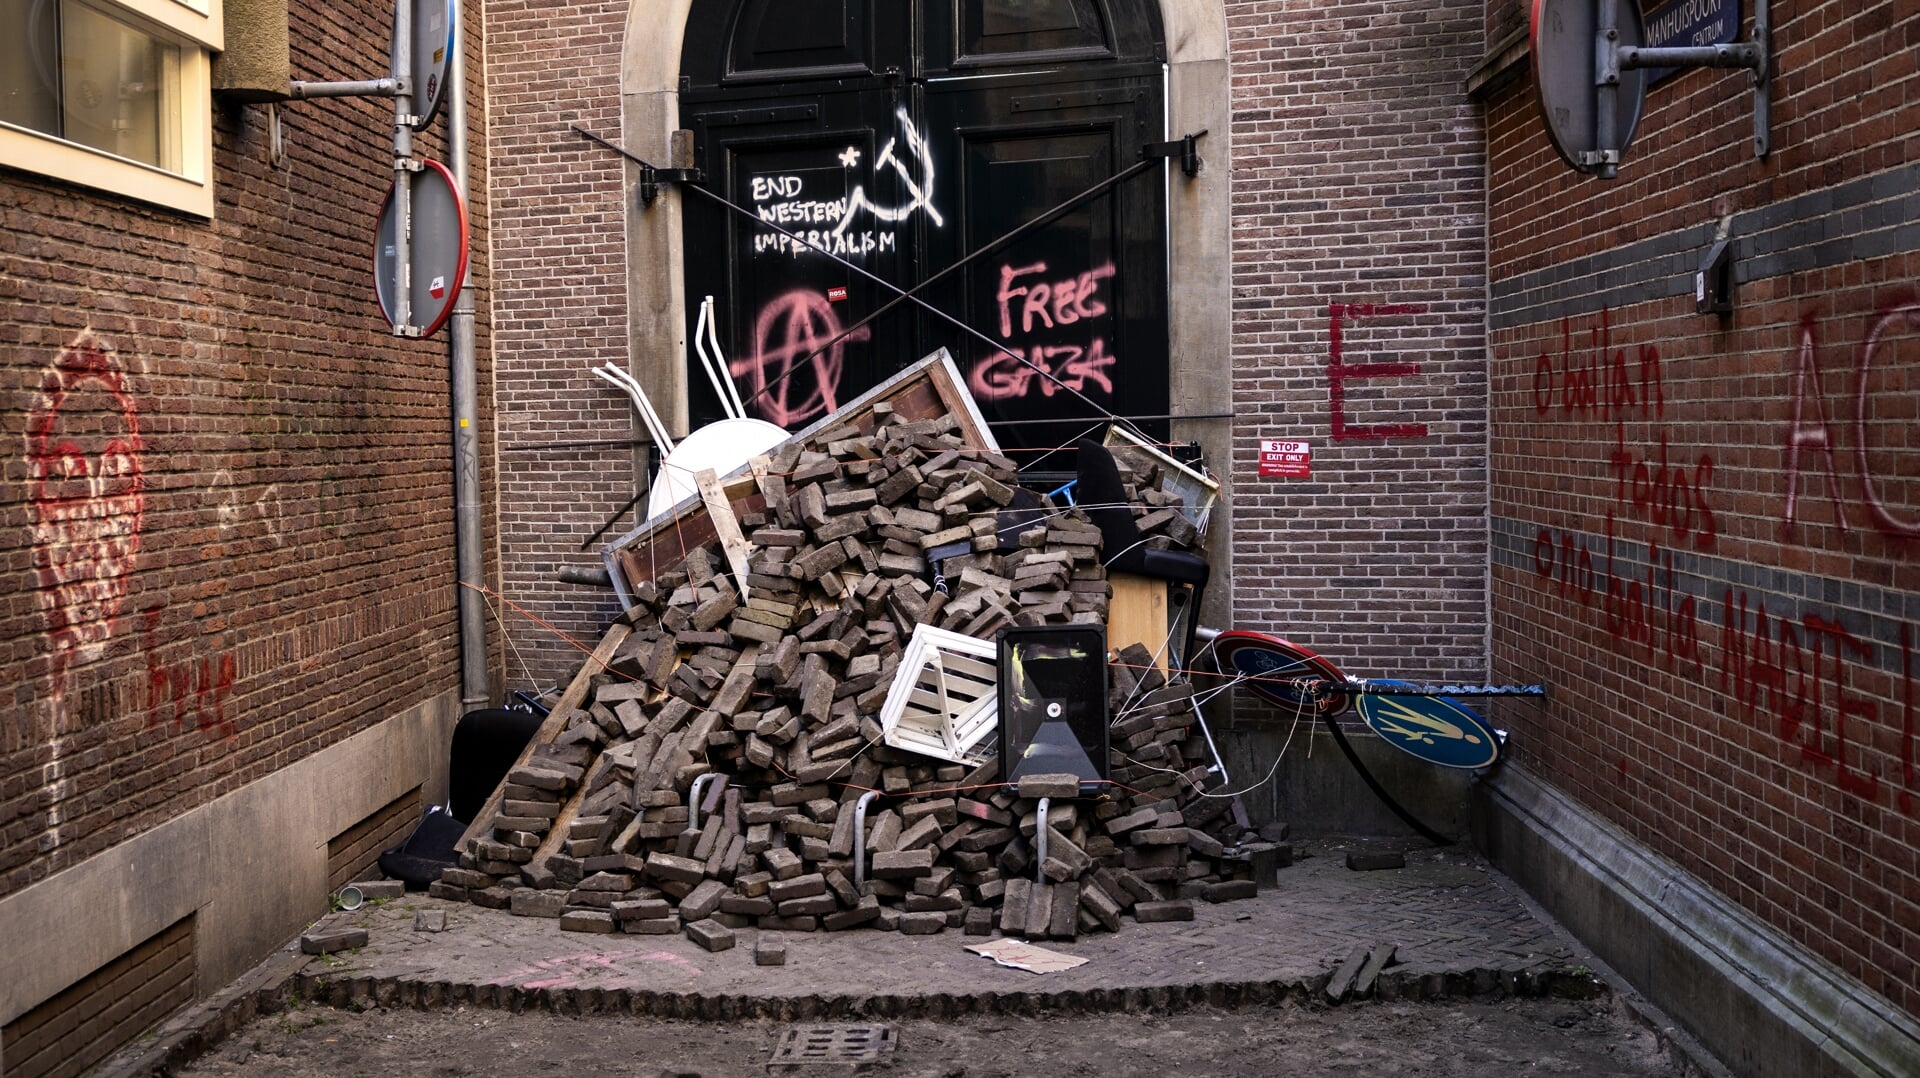 Losse straatstenen en graffiti op gevels zijn de stille getuigen van de UvA-studentenprotesten in Amsterdam.